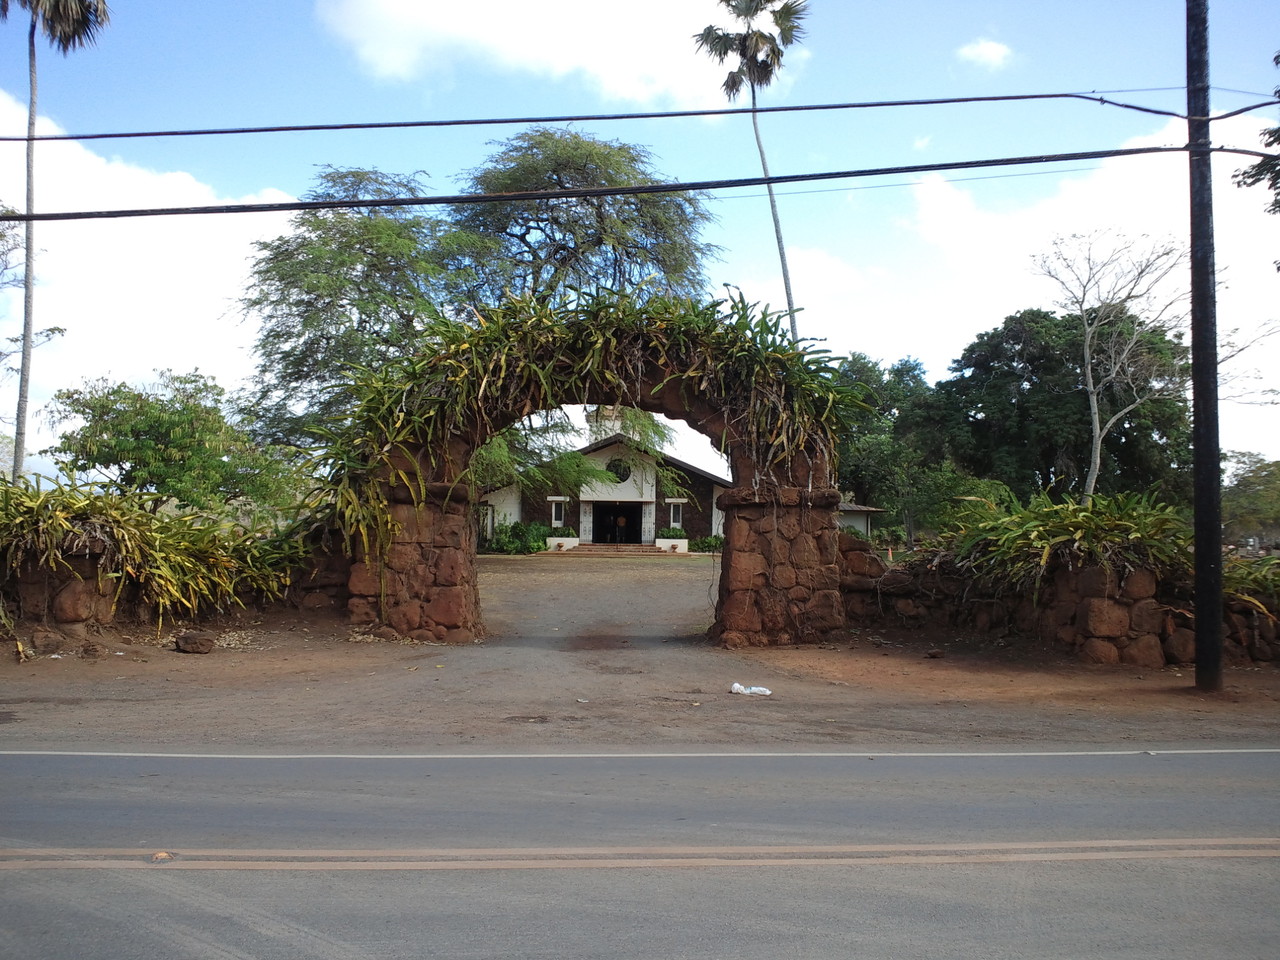 Lili'uokalani Church